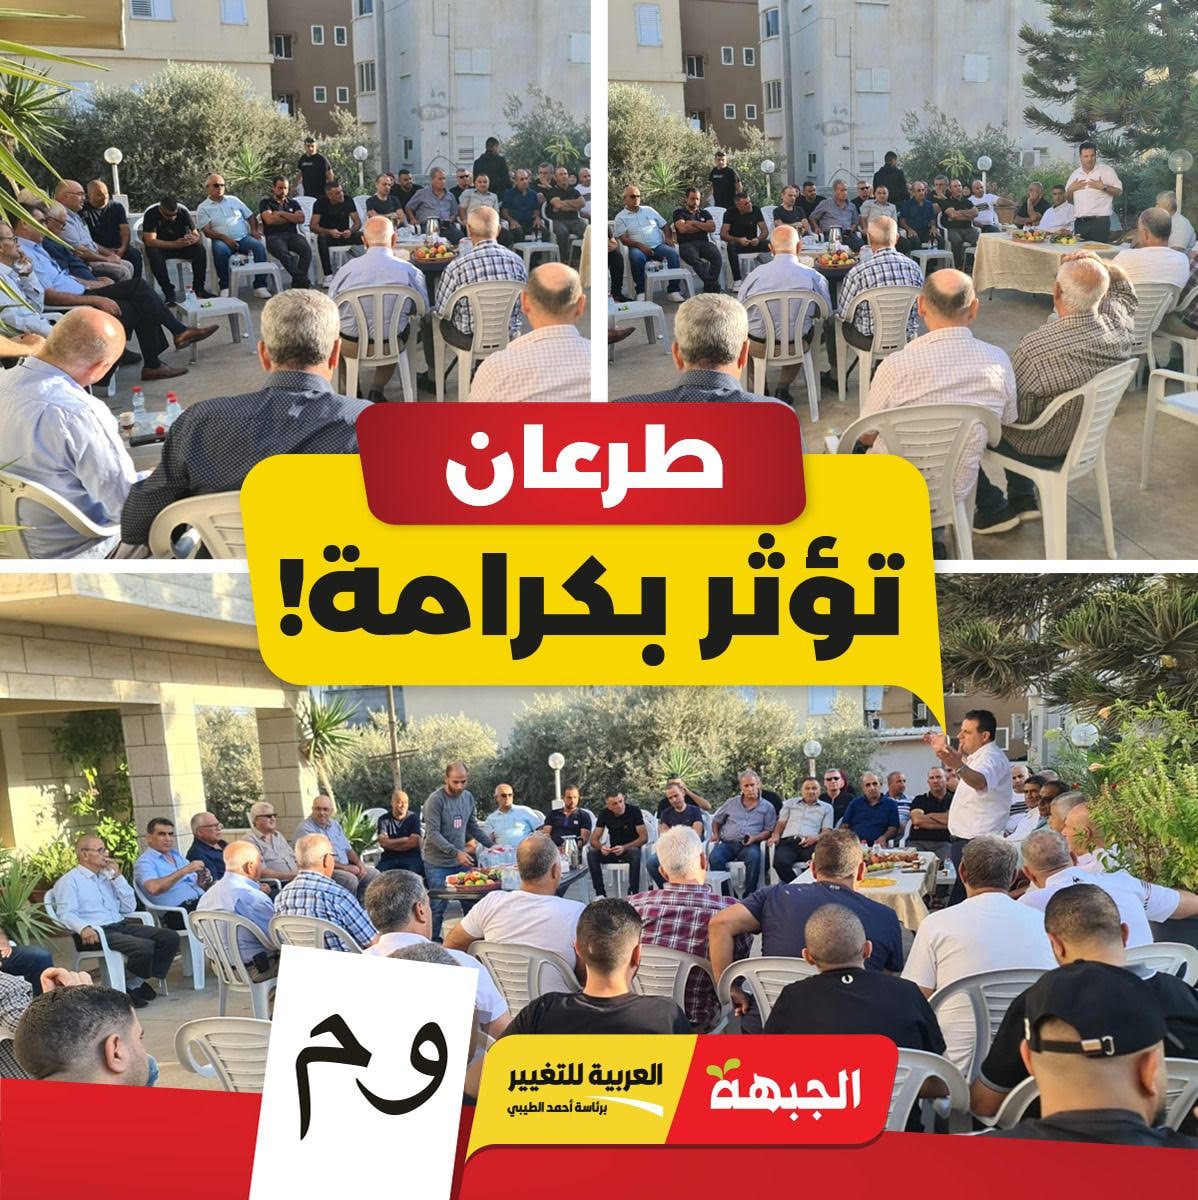 اجتماع انتخابي داعم لقائمة الجبهة والعربية للتغيير في طرعان